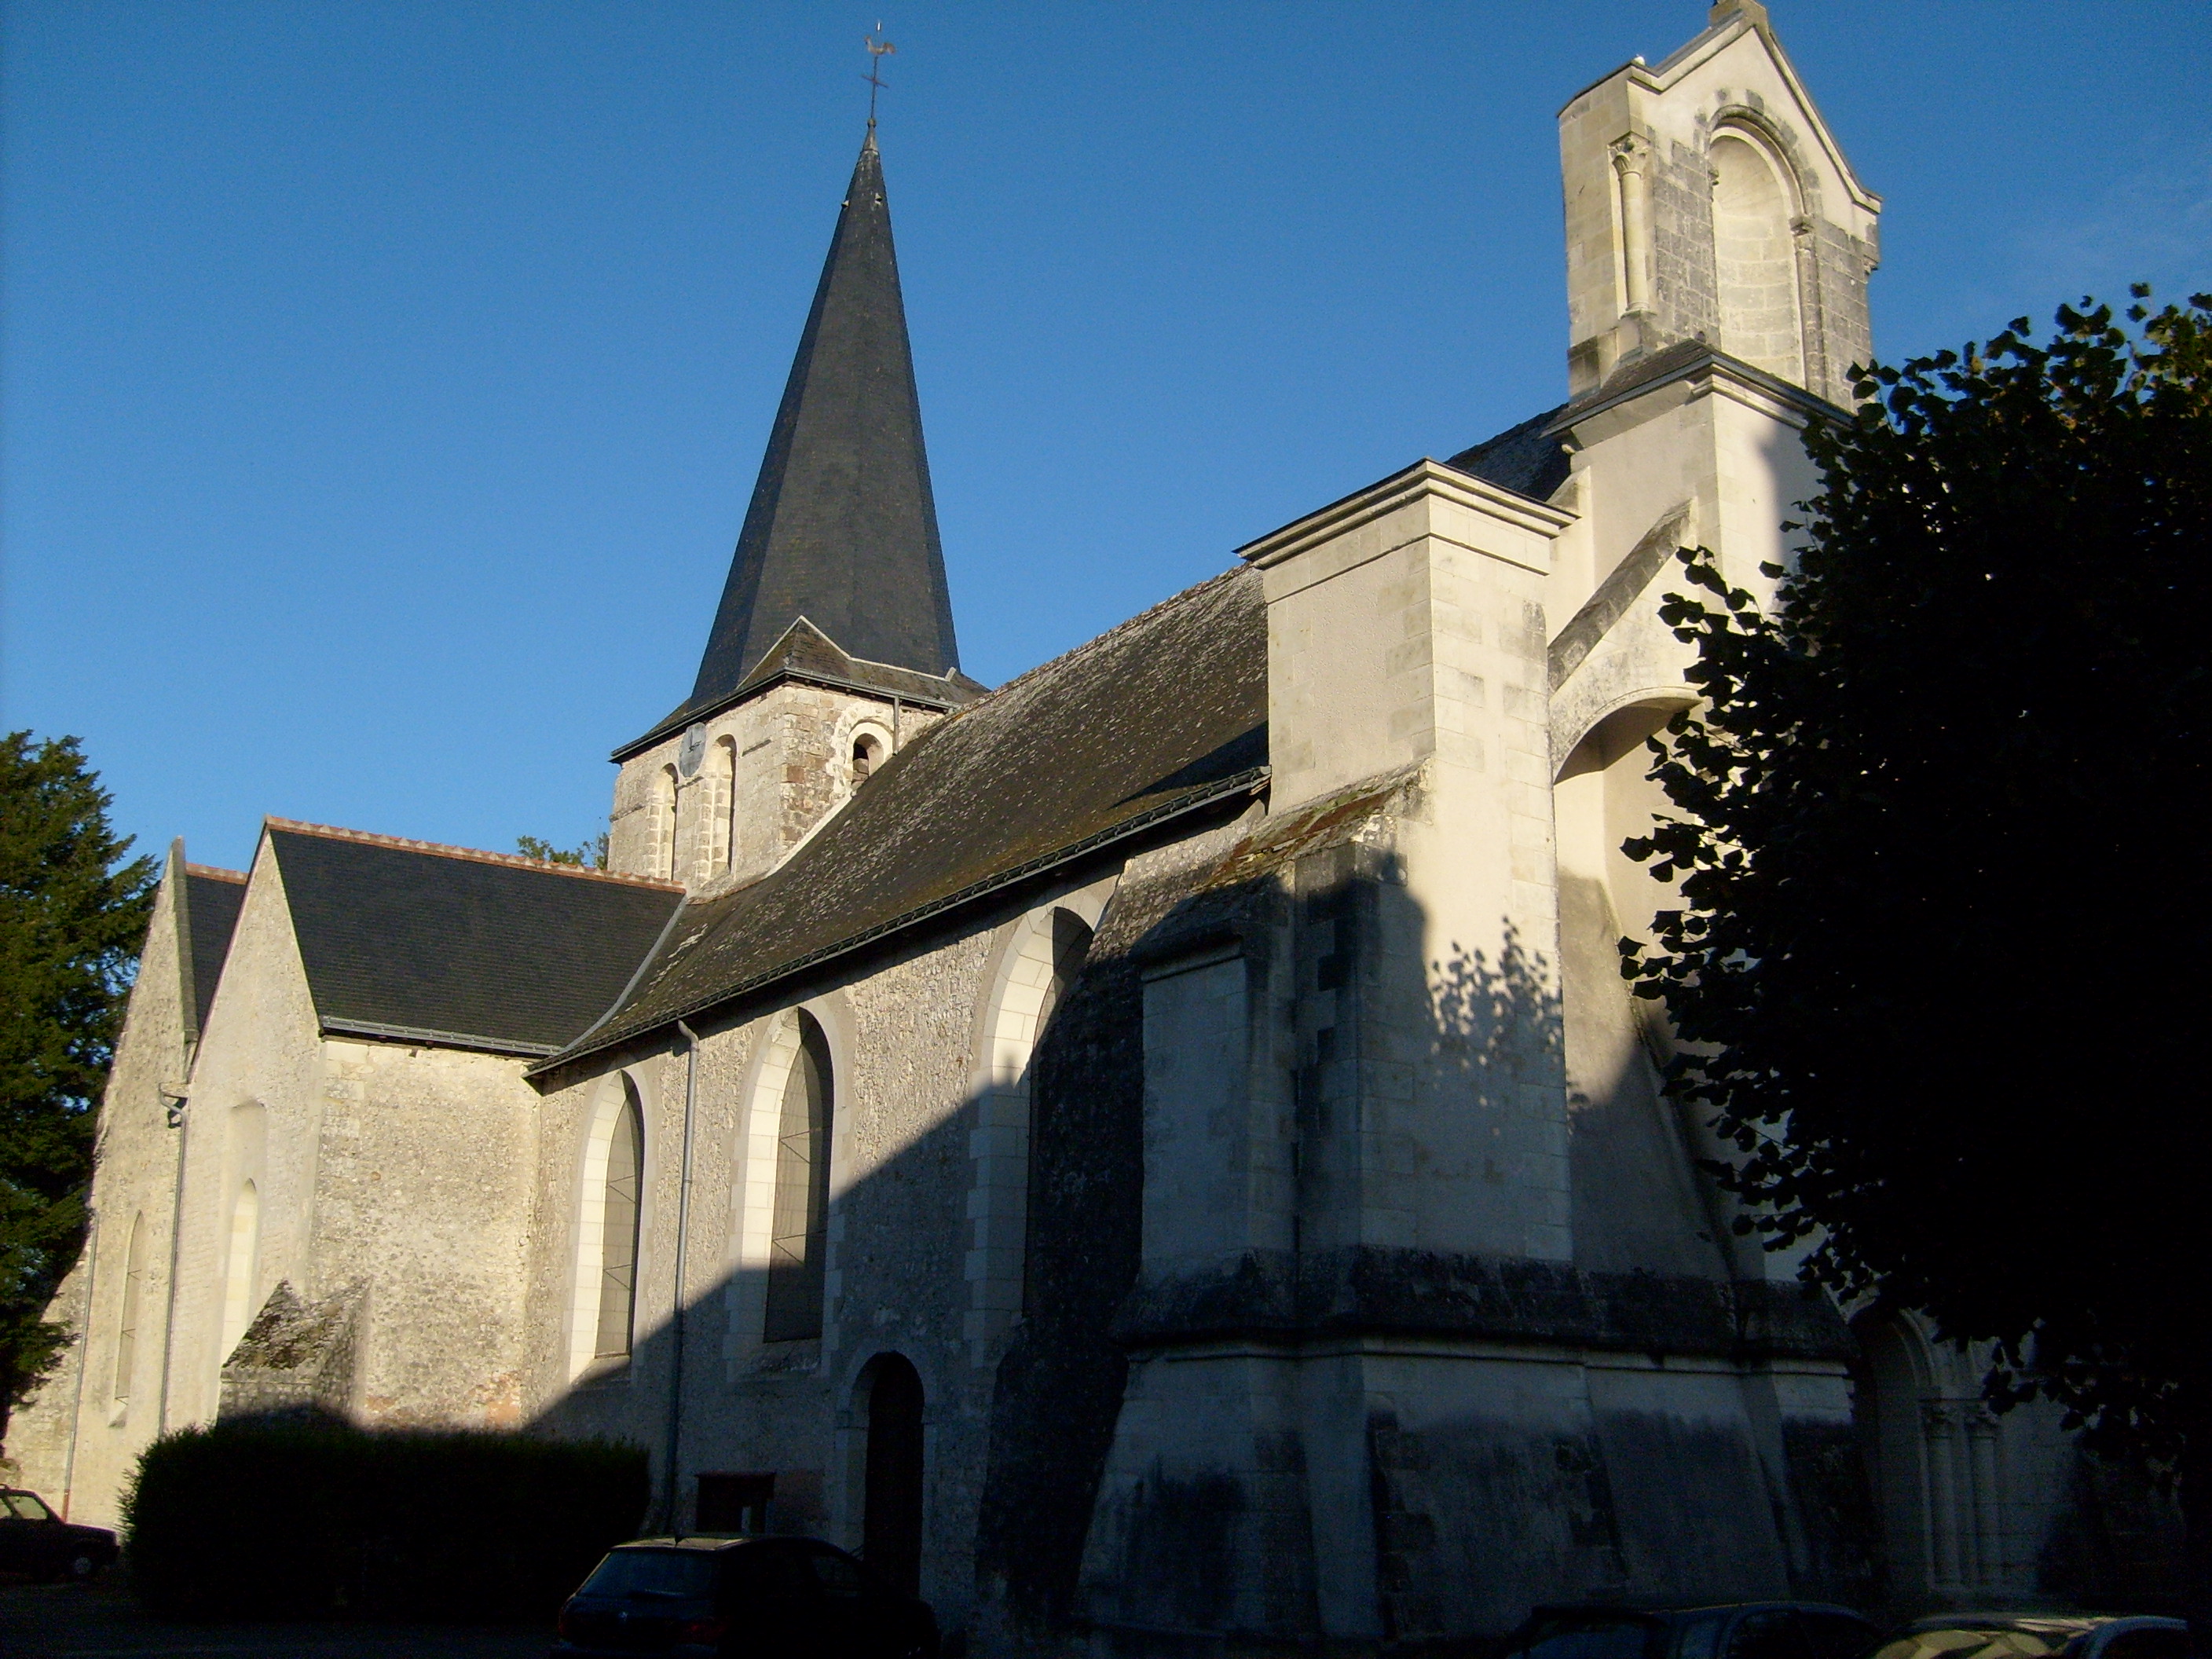 Mairie d'Artannes-sur-Indre (37260)